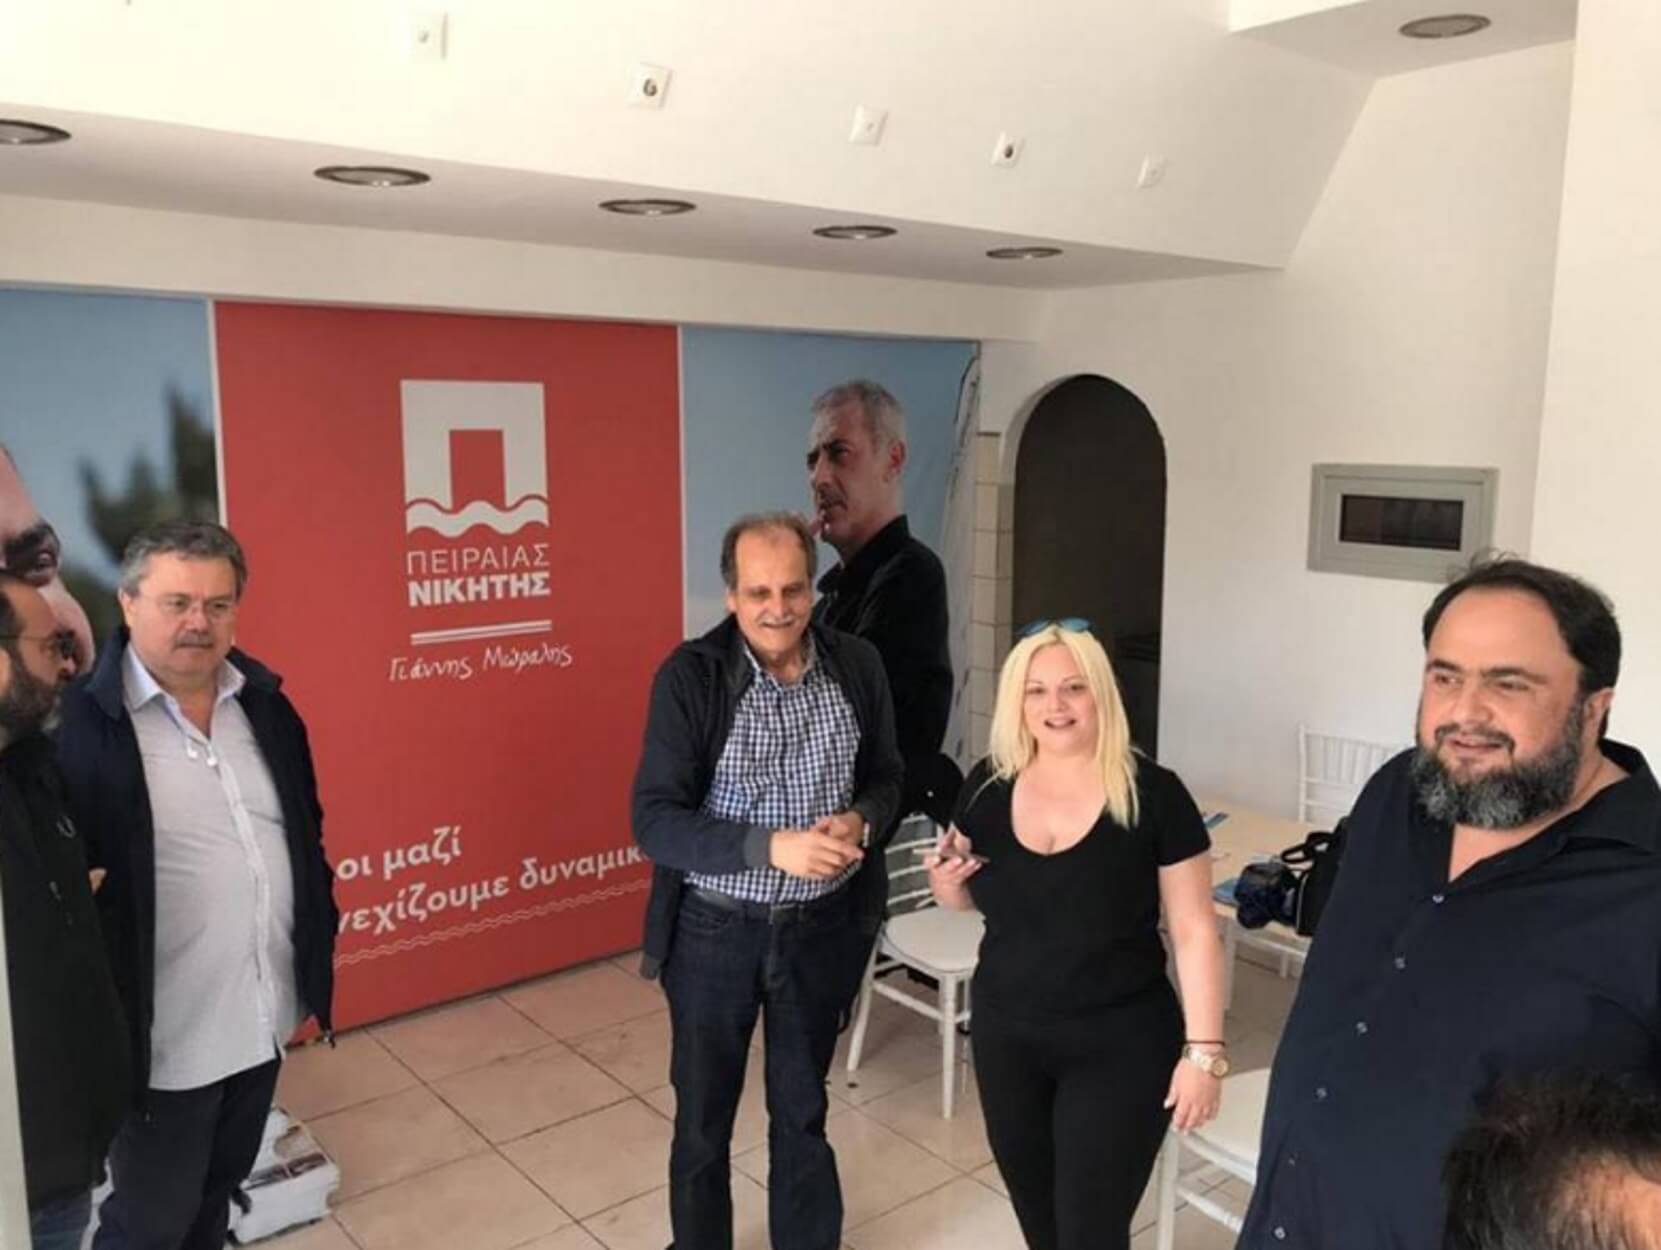 Δημοτικές εκλογές 2019: Ο Βαγγέλης Μαρινάκης περιόδευσε στο κέντρο του Πειραιά!